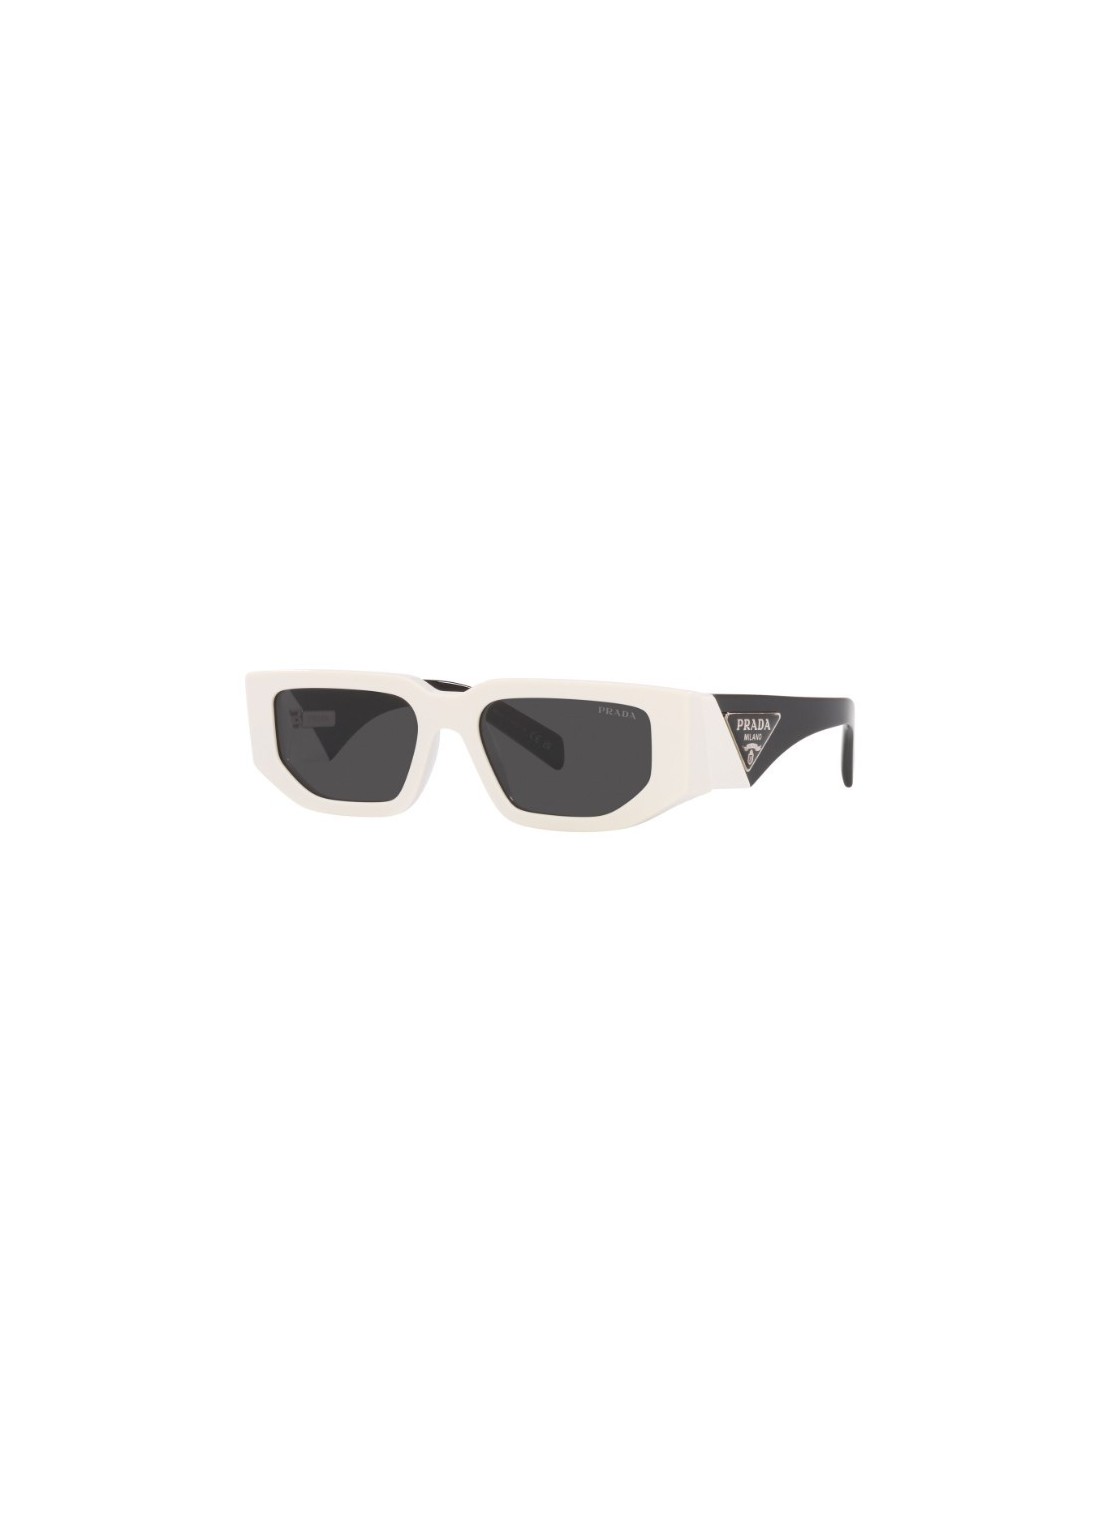 Gafas prada sunglasses woman 0pr09zs 0pr09zs 1425s0 talla transparente
 